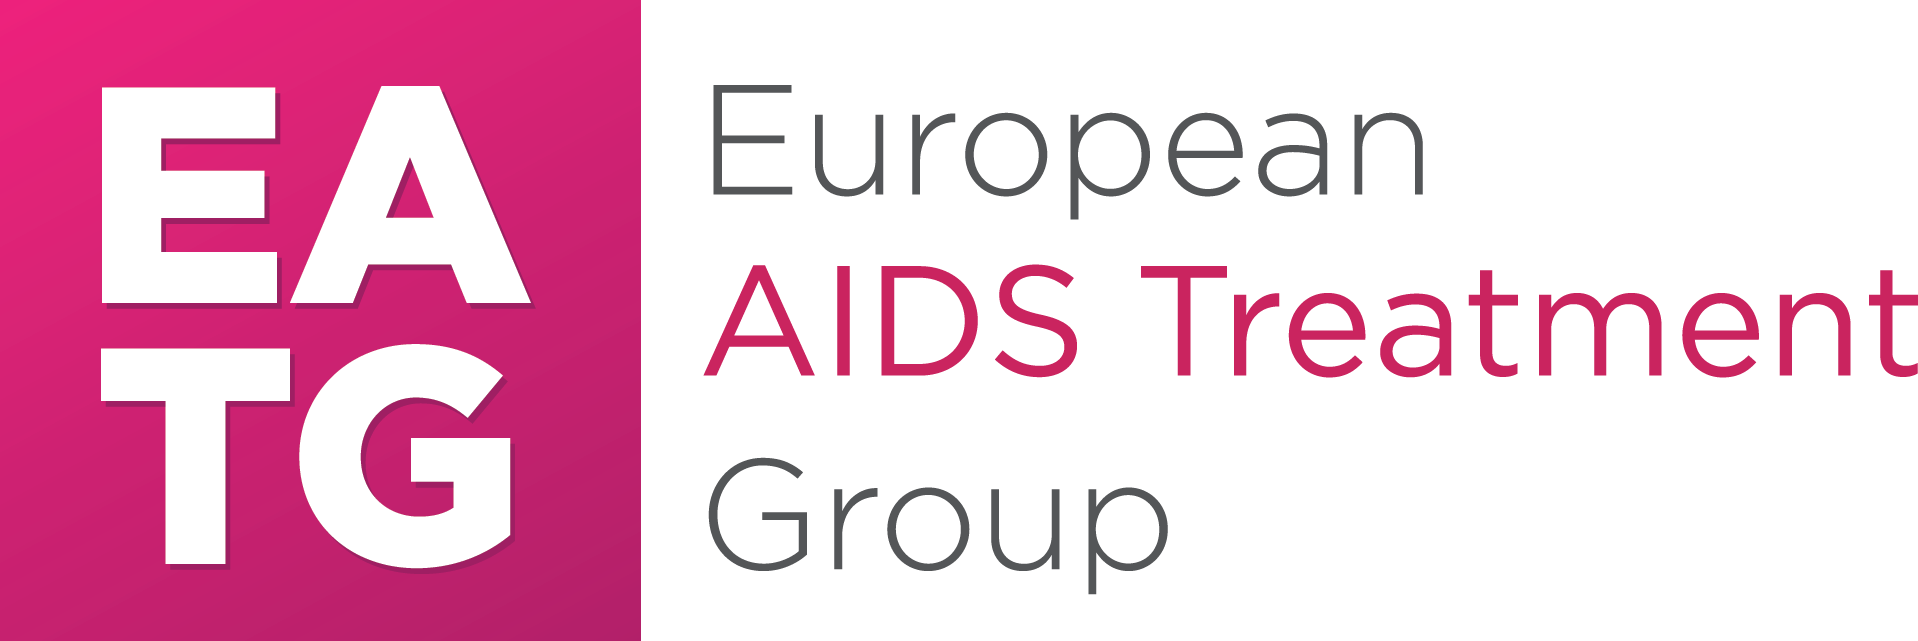 European-AIDS-Treatment-Group-LOGO-2019